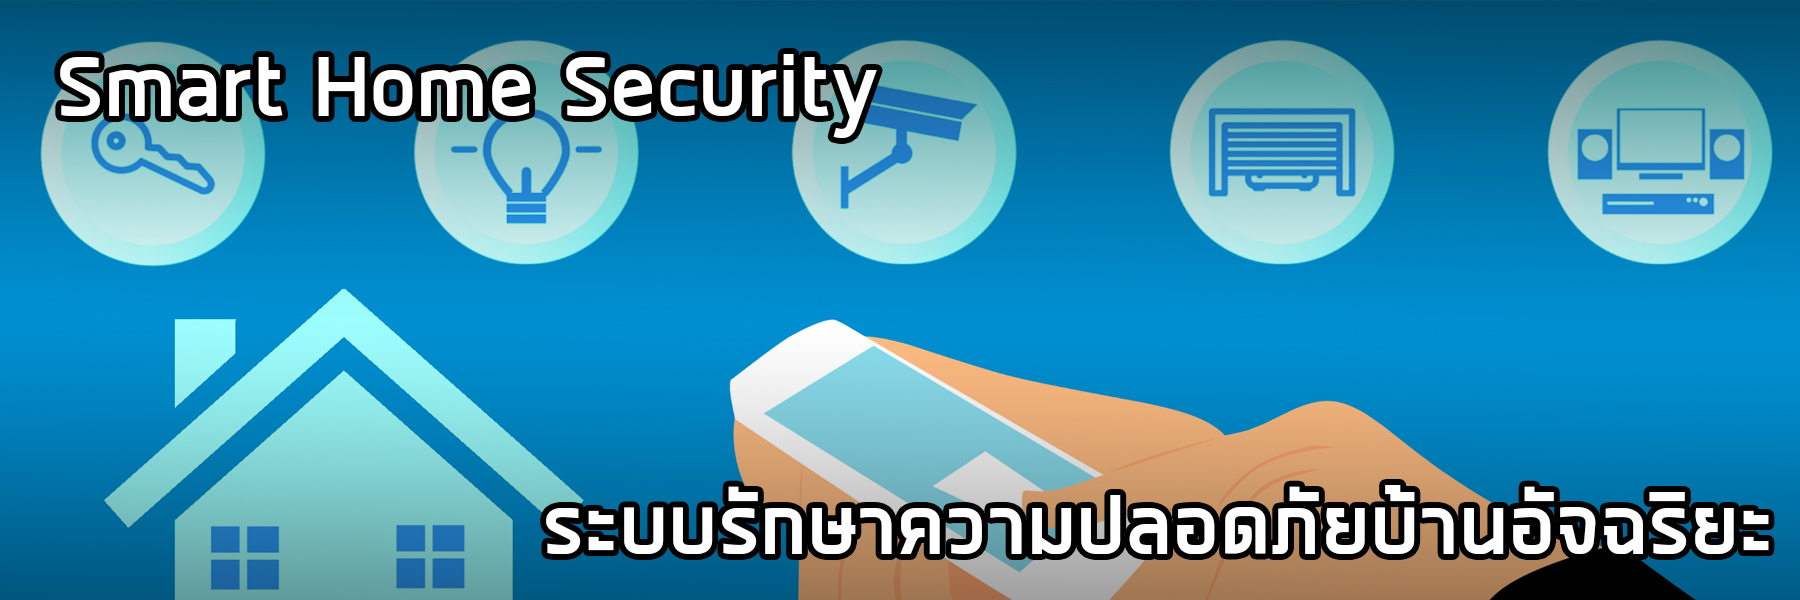 Smart Home Security ระบบรักษาความปลอดภัยบ้านอัจฉริยะ